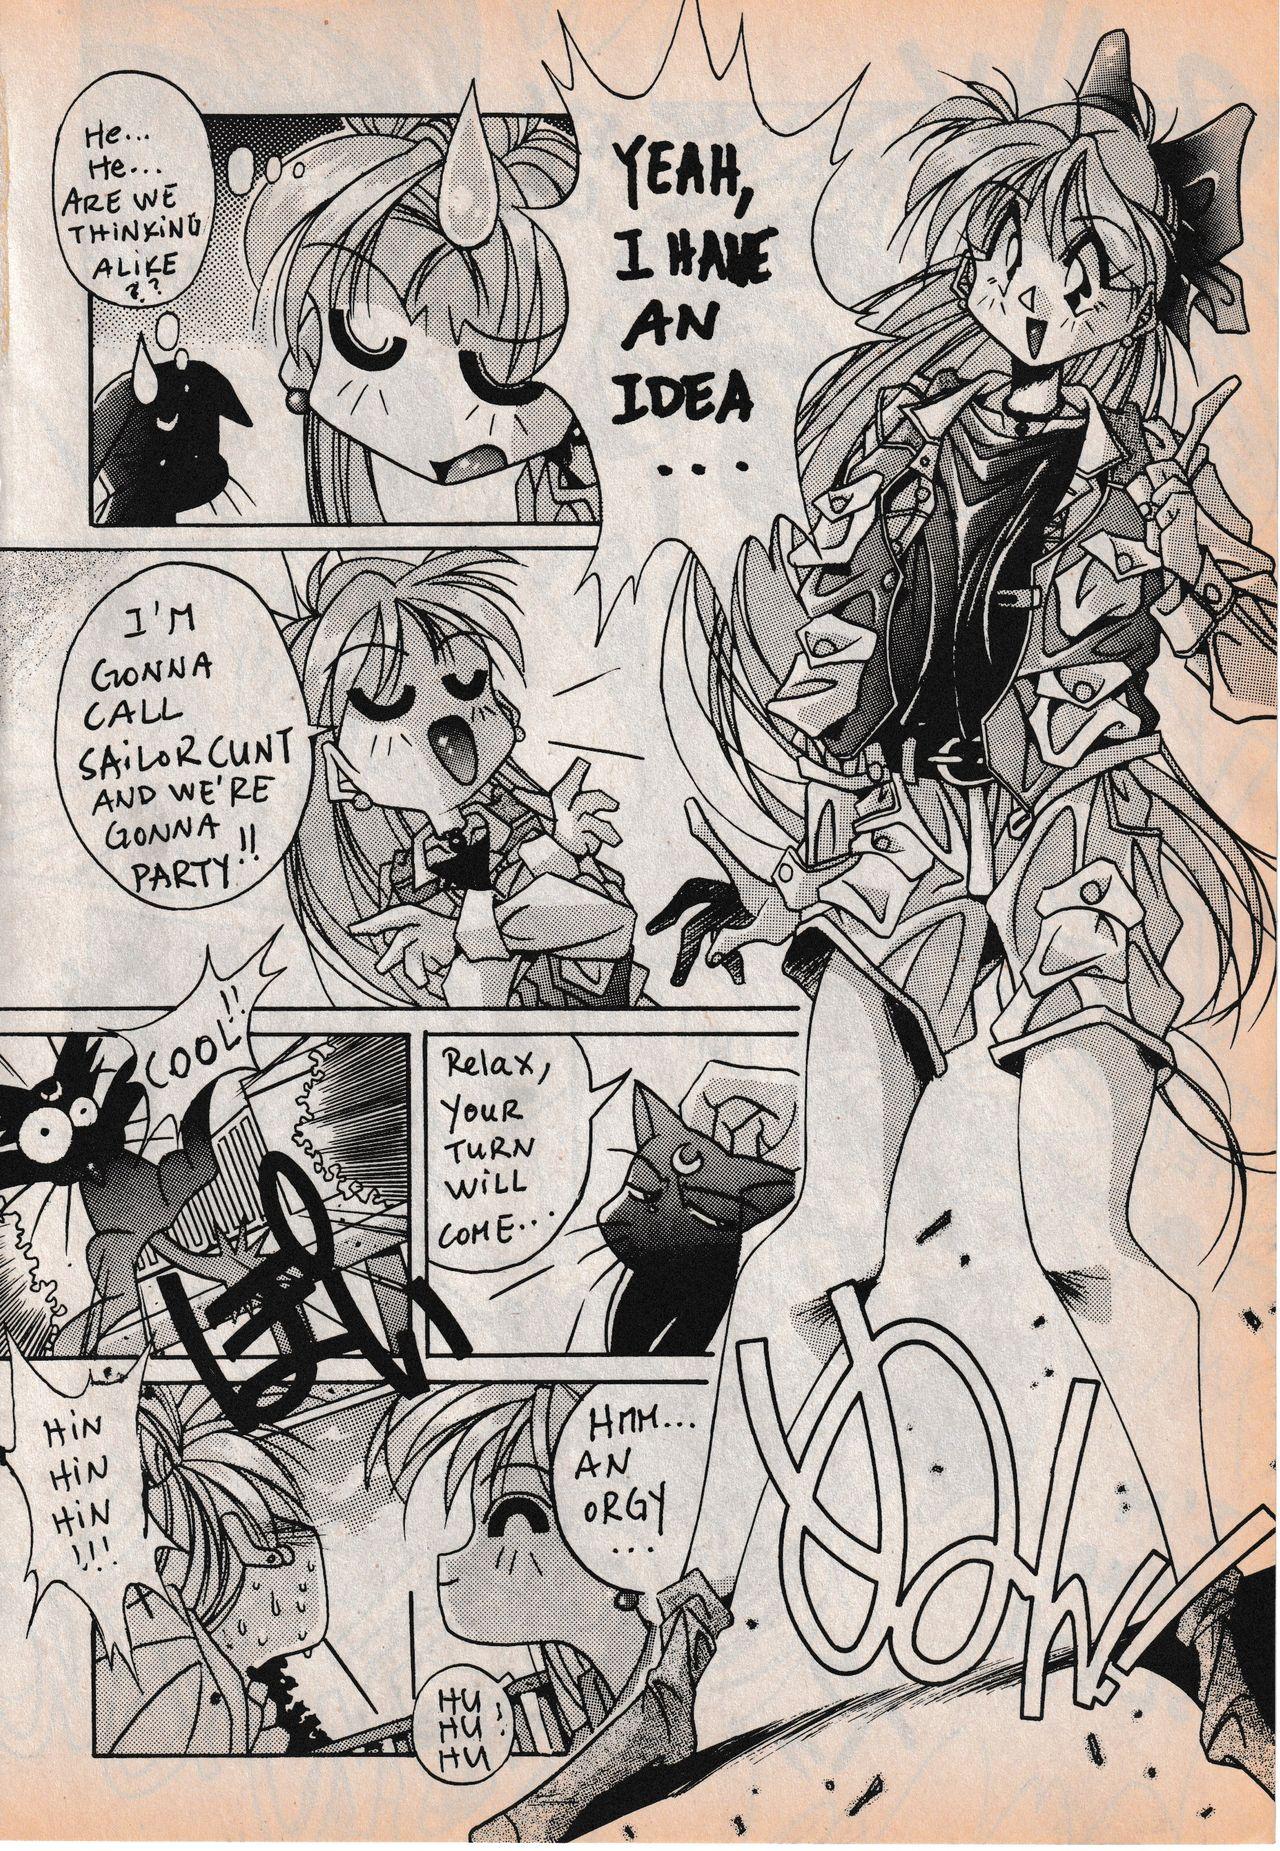 Sailor X vol. 3 - Sailor X Return 27